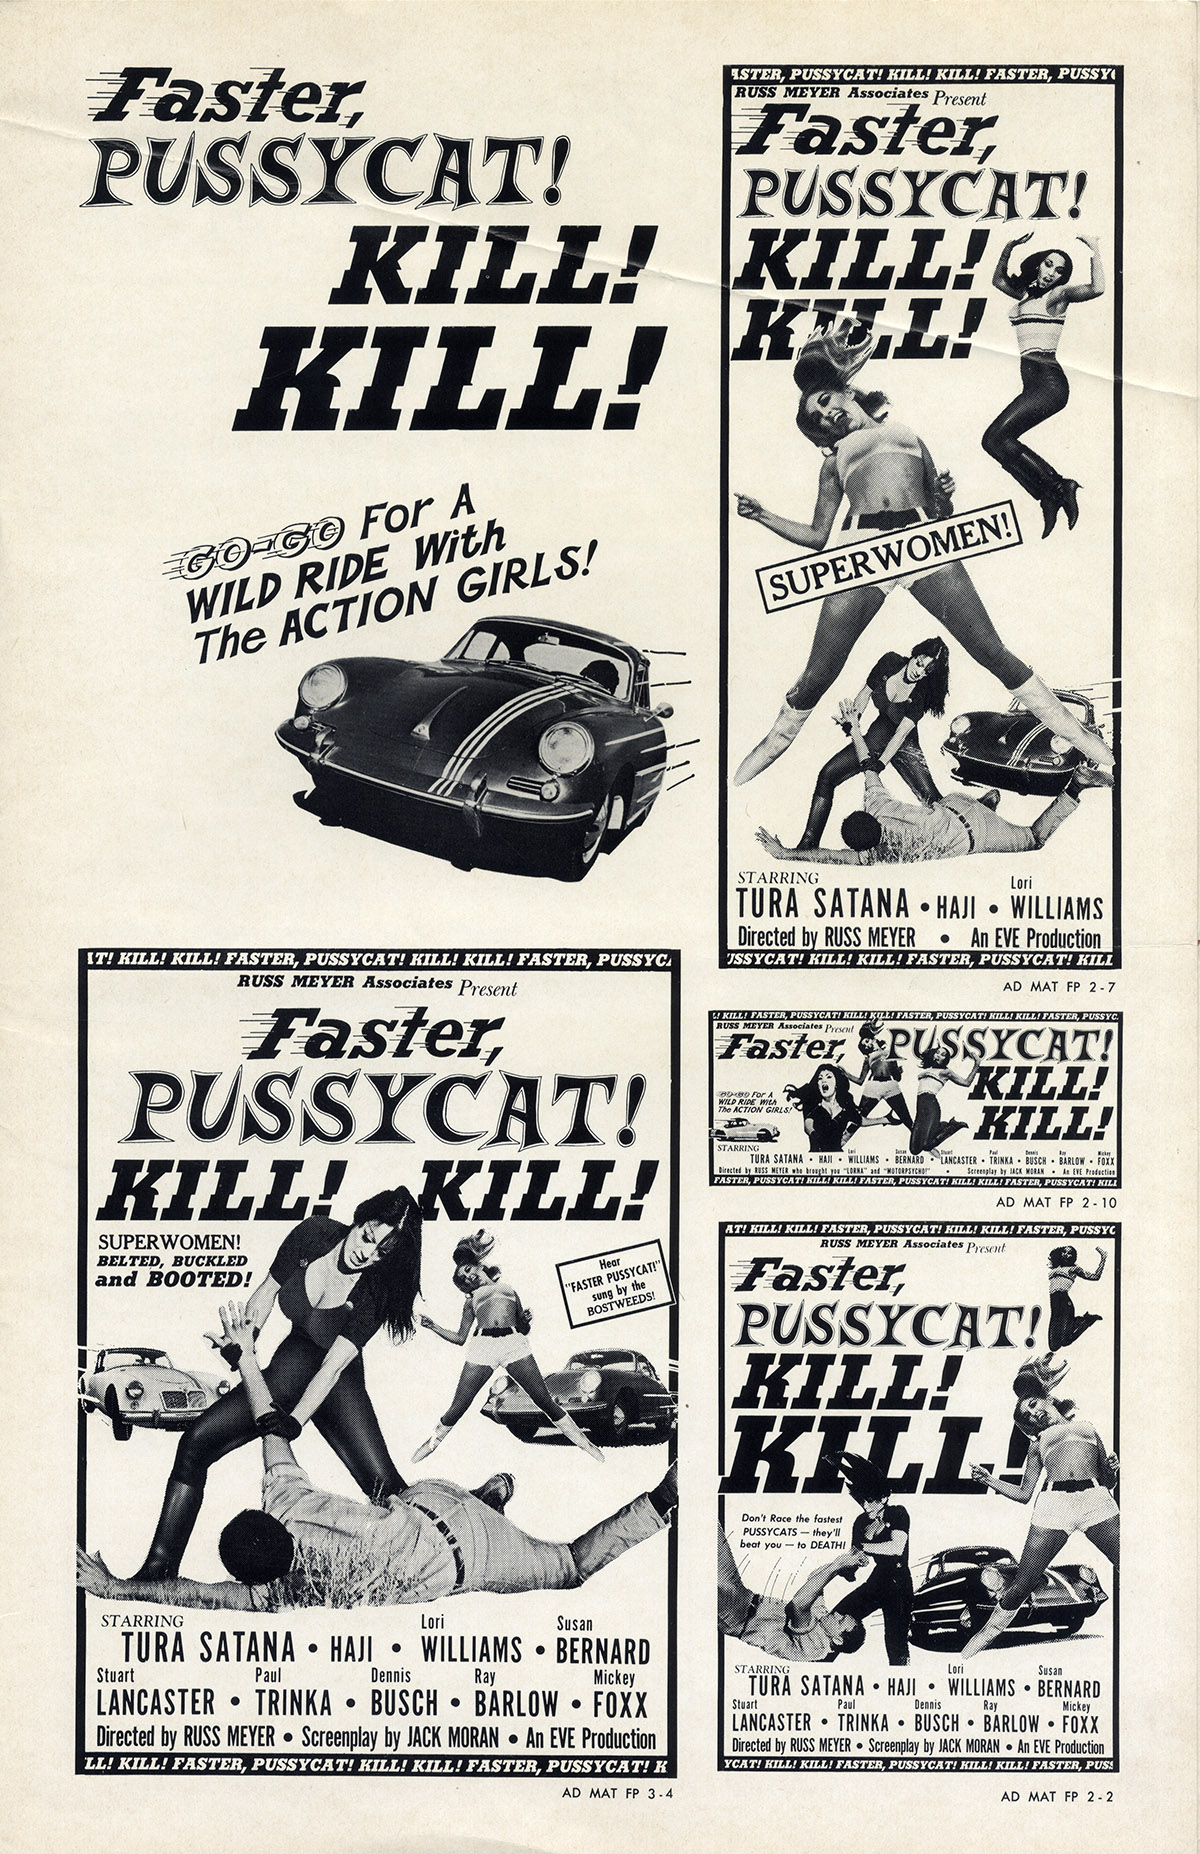 Faster Pussycat Kill Kill 1965 Pressbook Walterfilm 